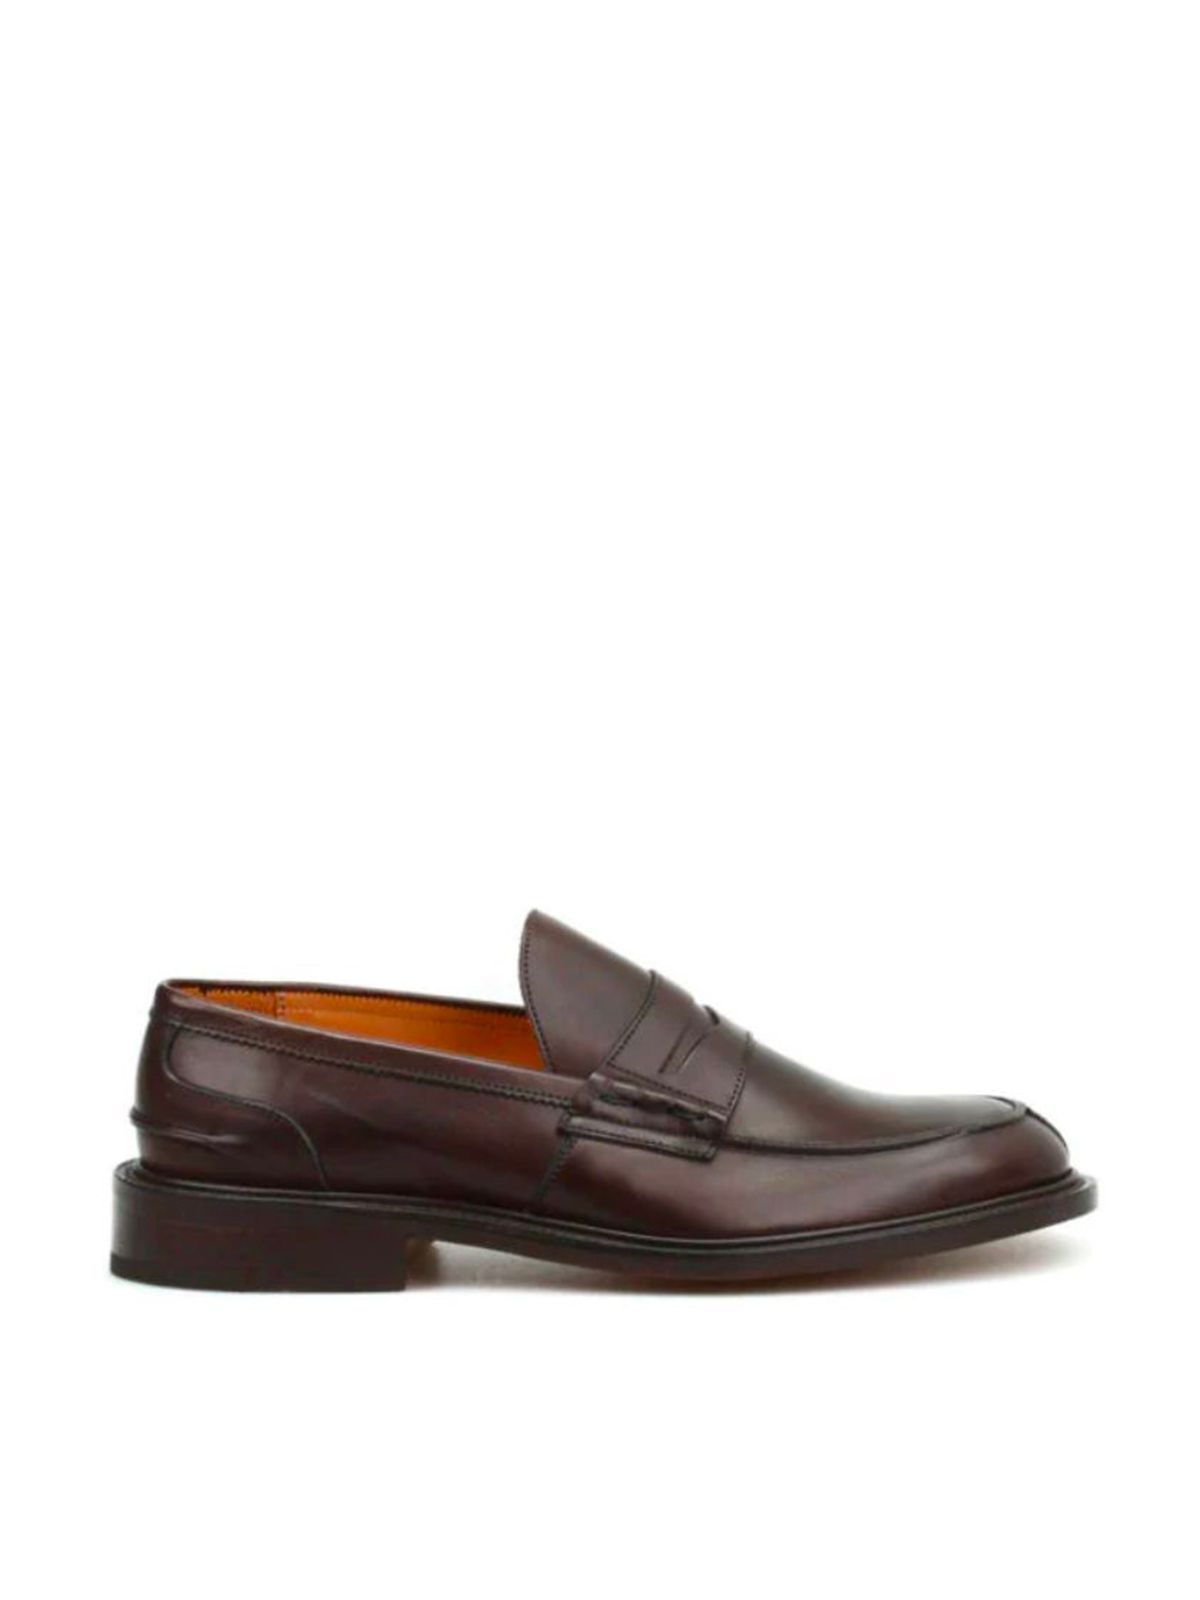 Shop Tricker's Men's Laced Leather Shoes